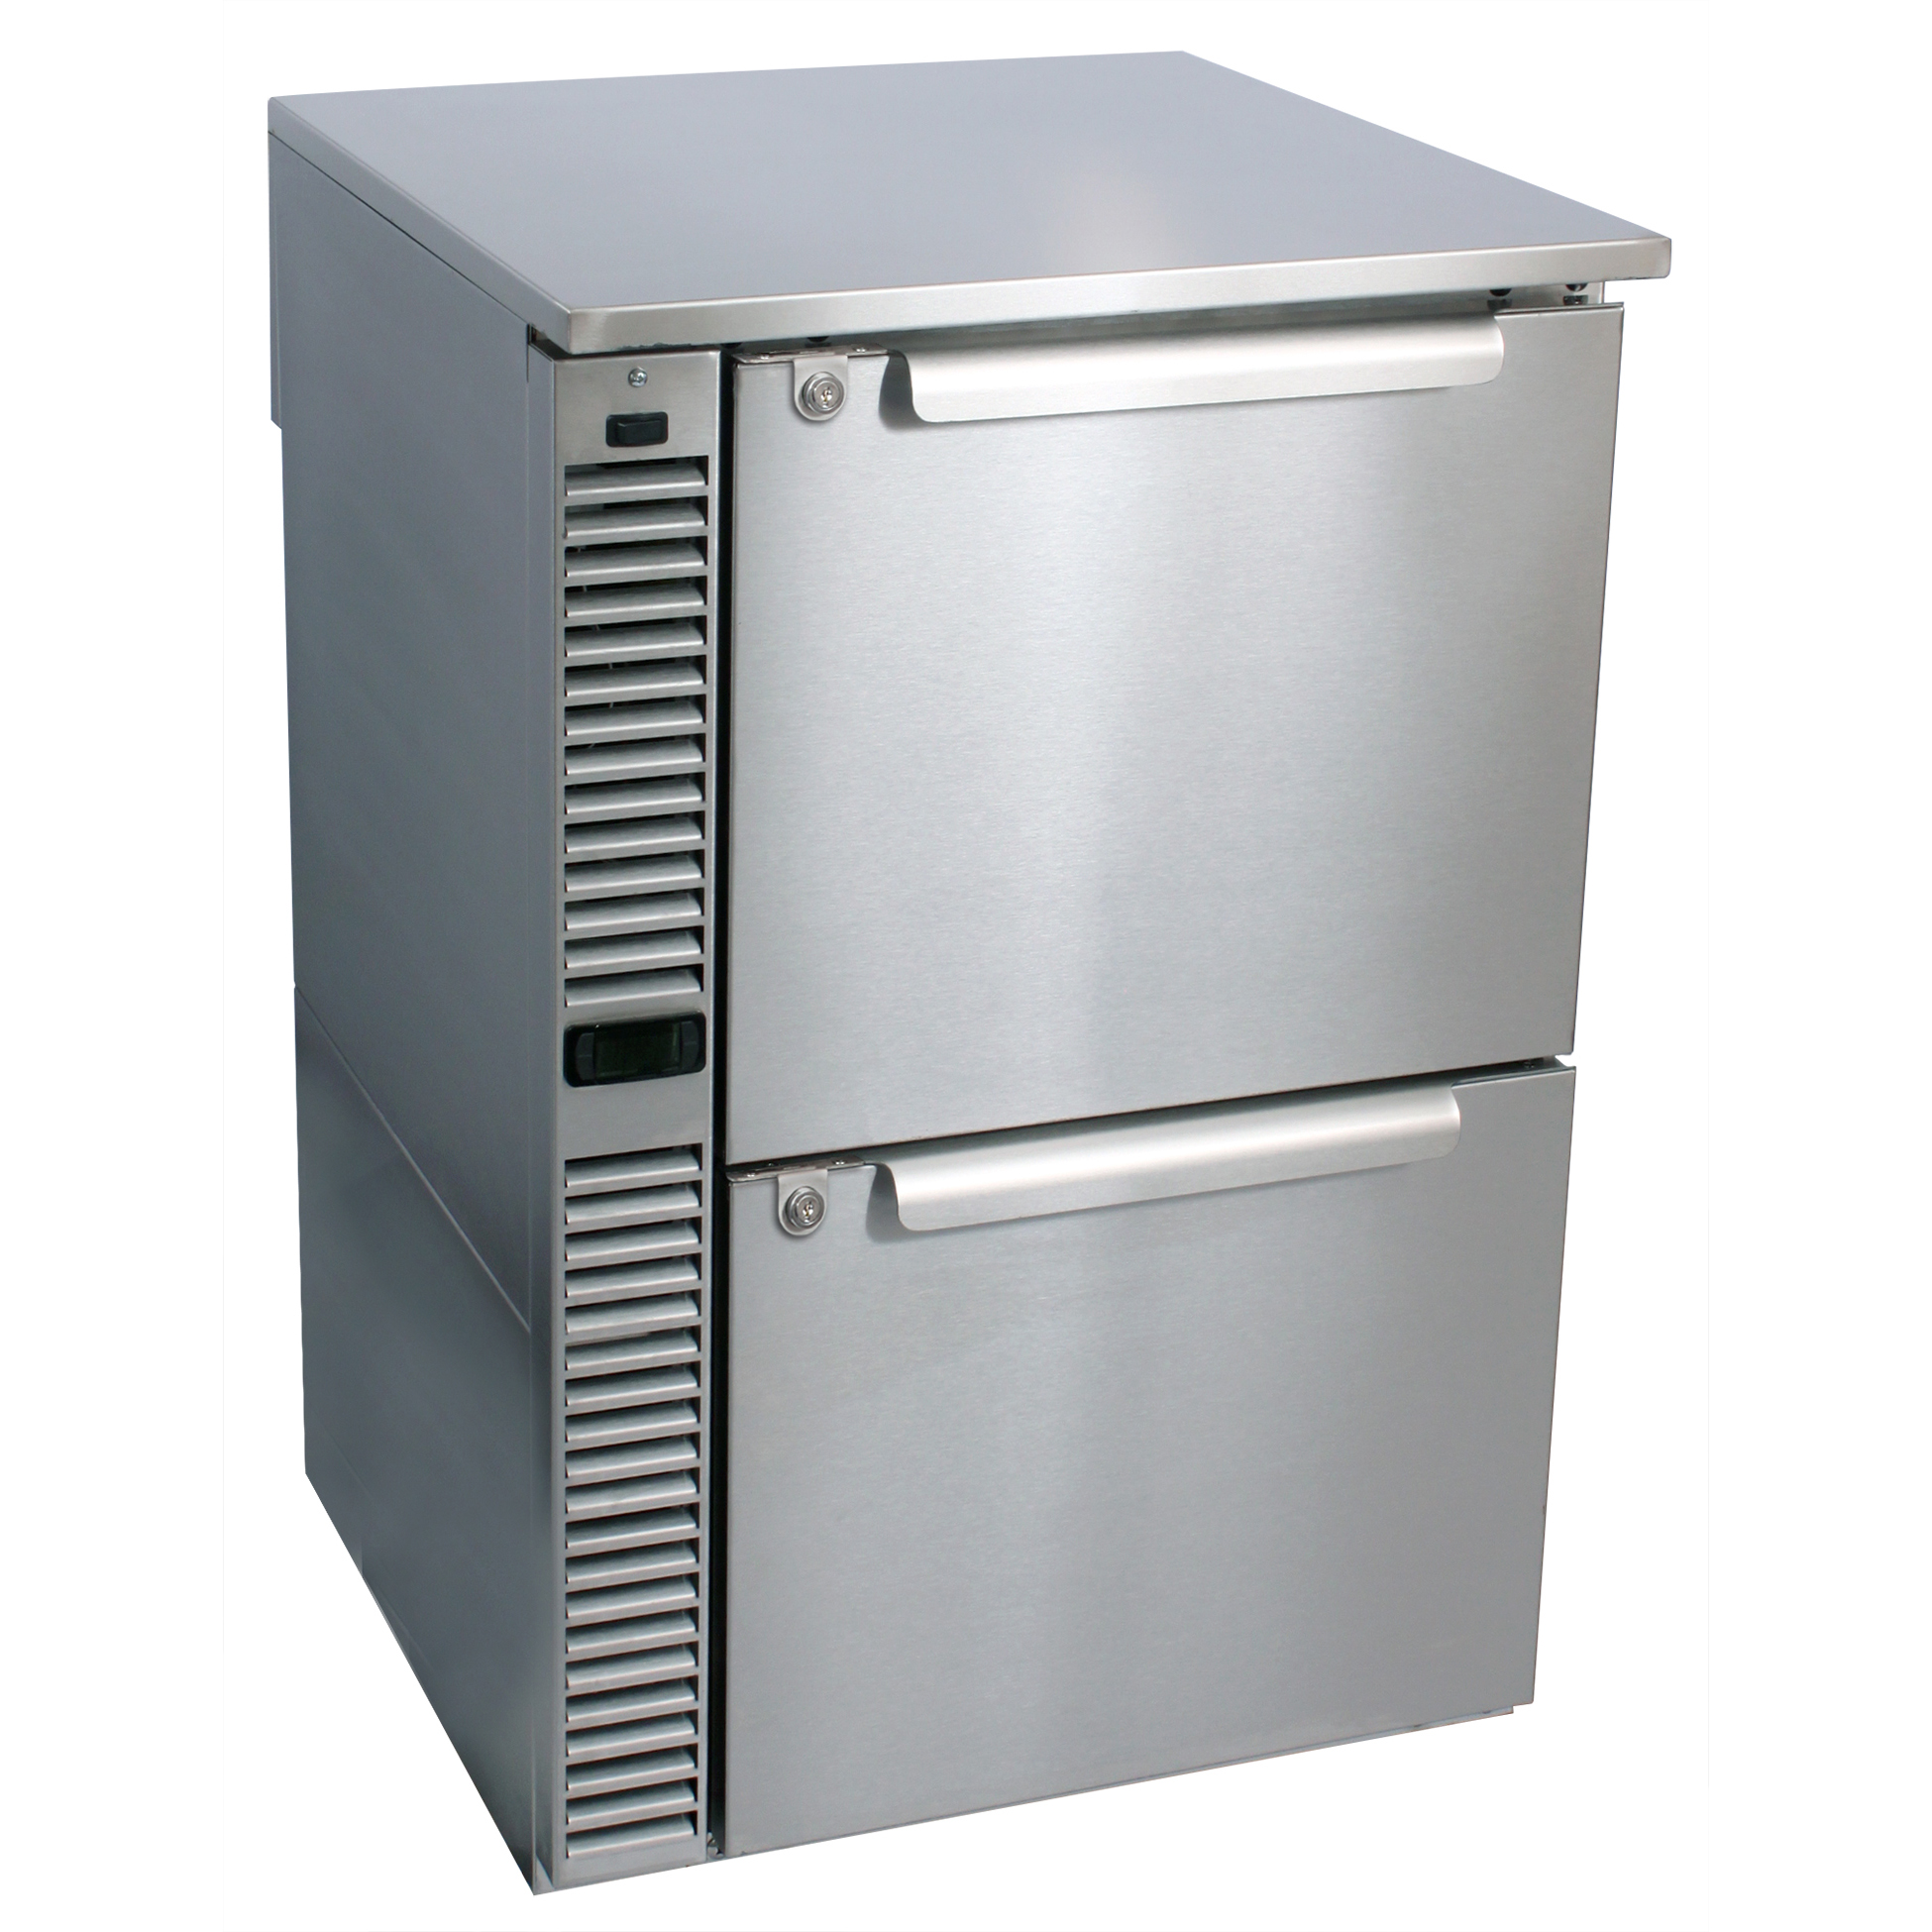 Glastender C1SB24 24″ 1 Section Back Bar Refrigerator with Solid Door